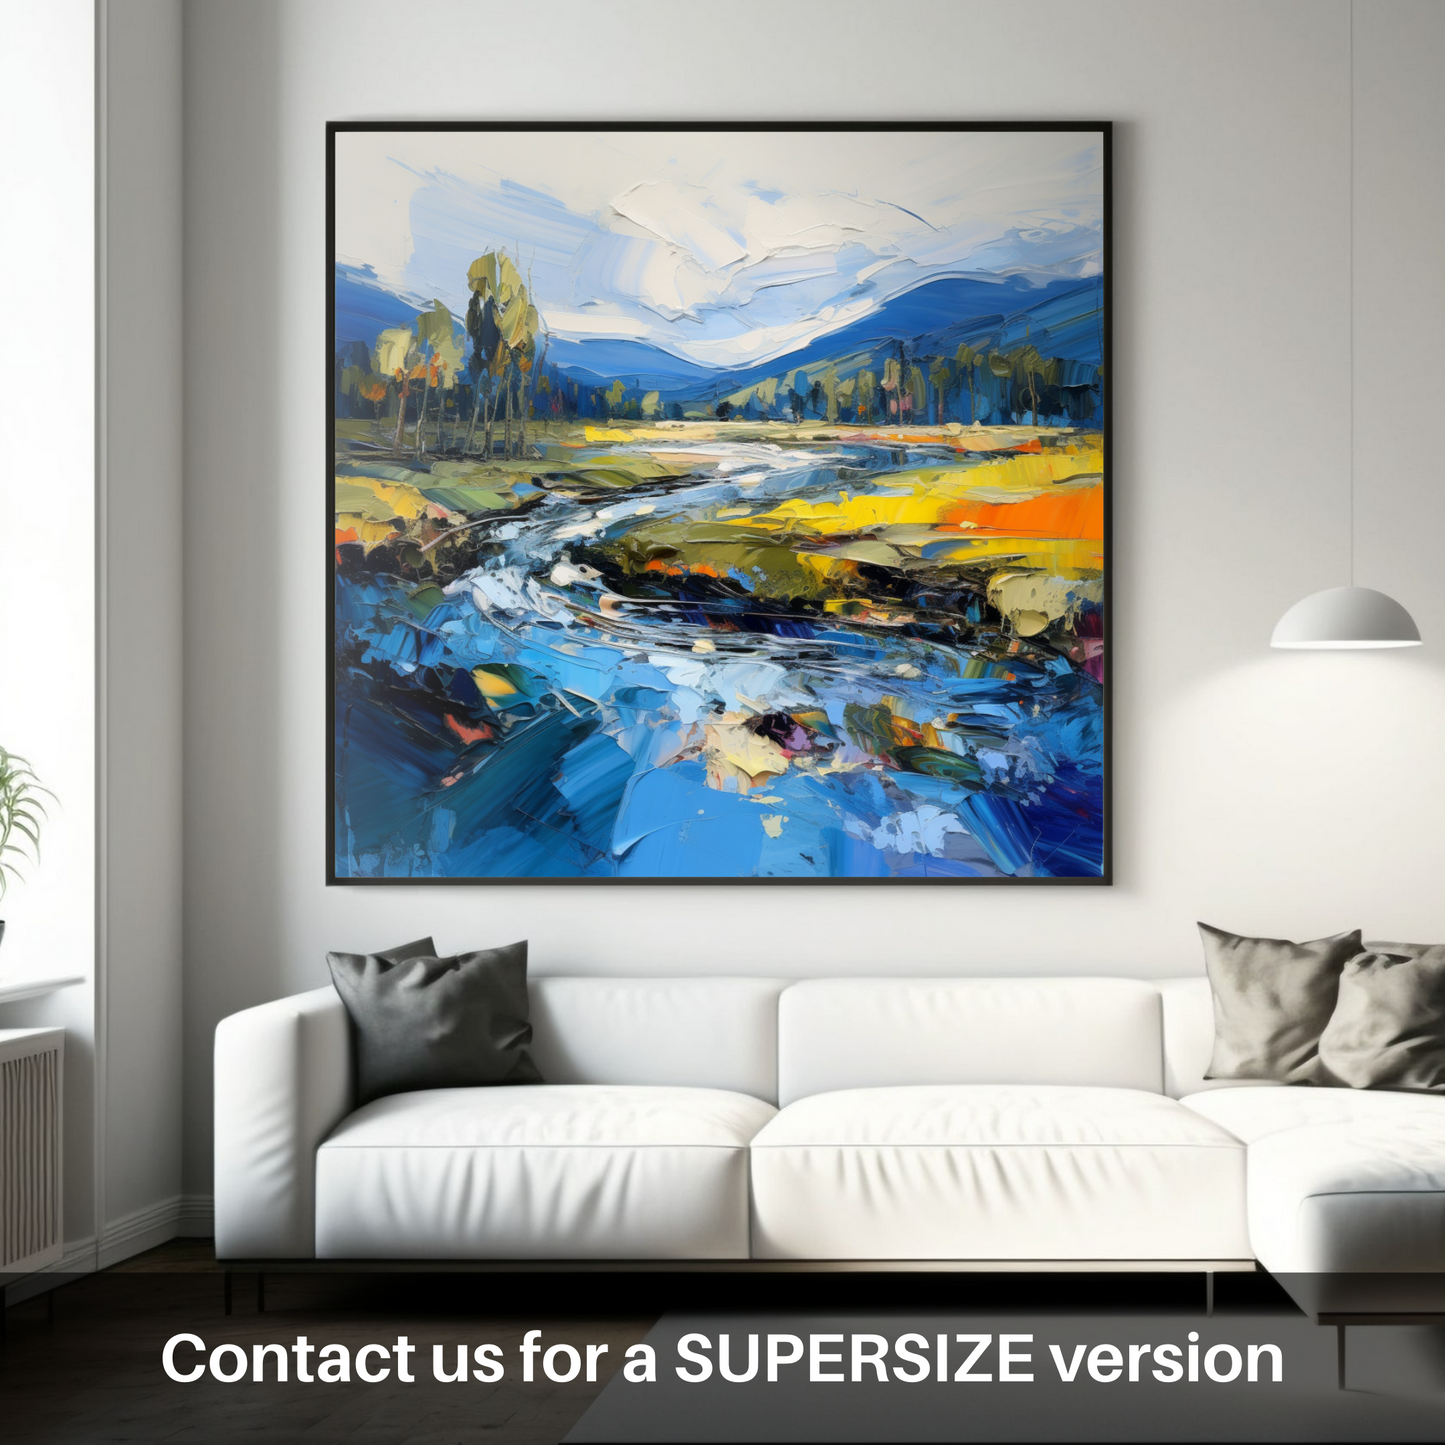 Huge supersize print of River Spey, Highlands